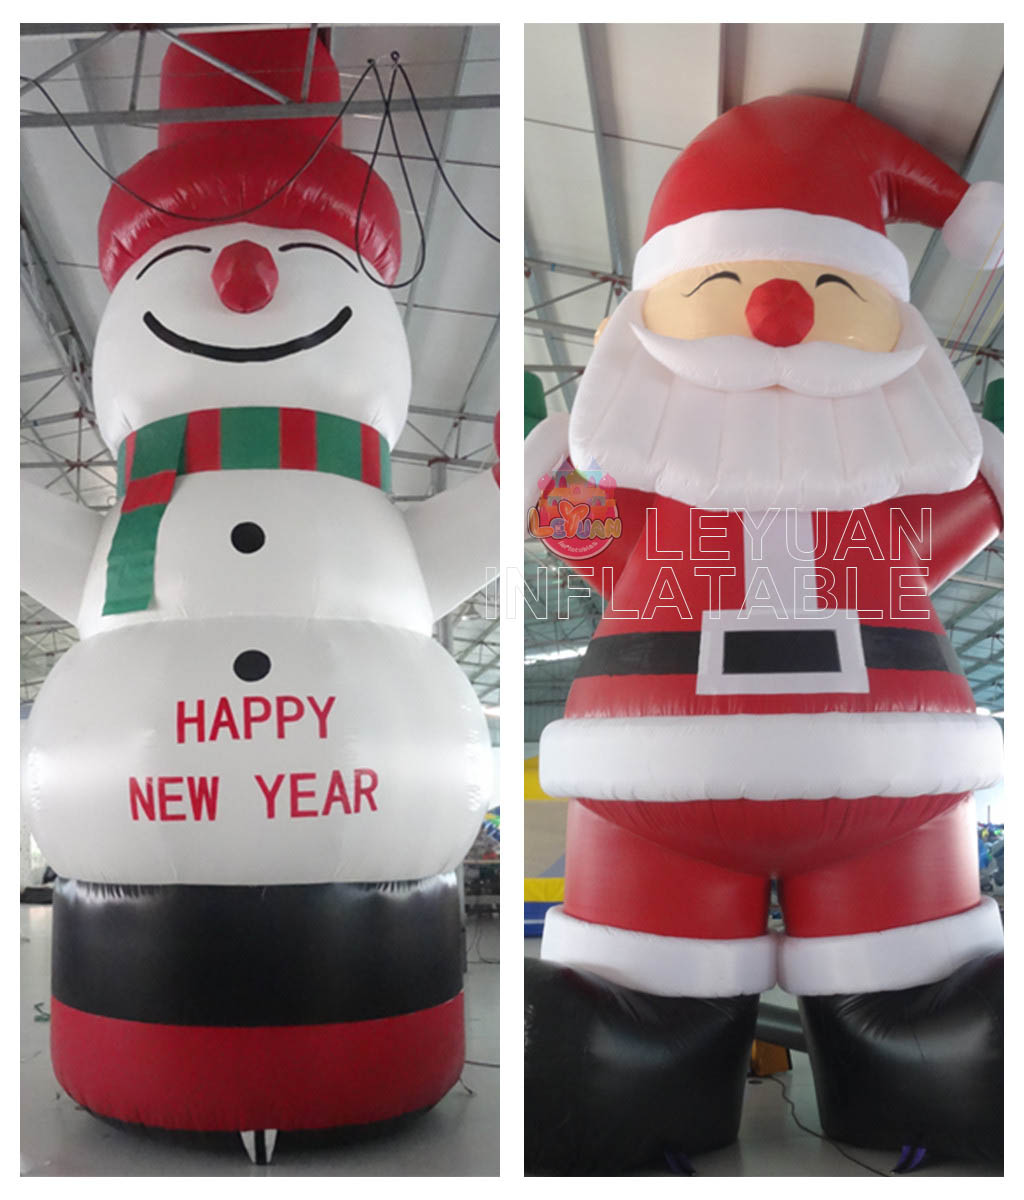 Giant Christmas Inflatable Santa